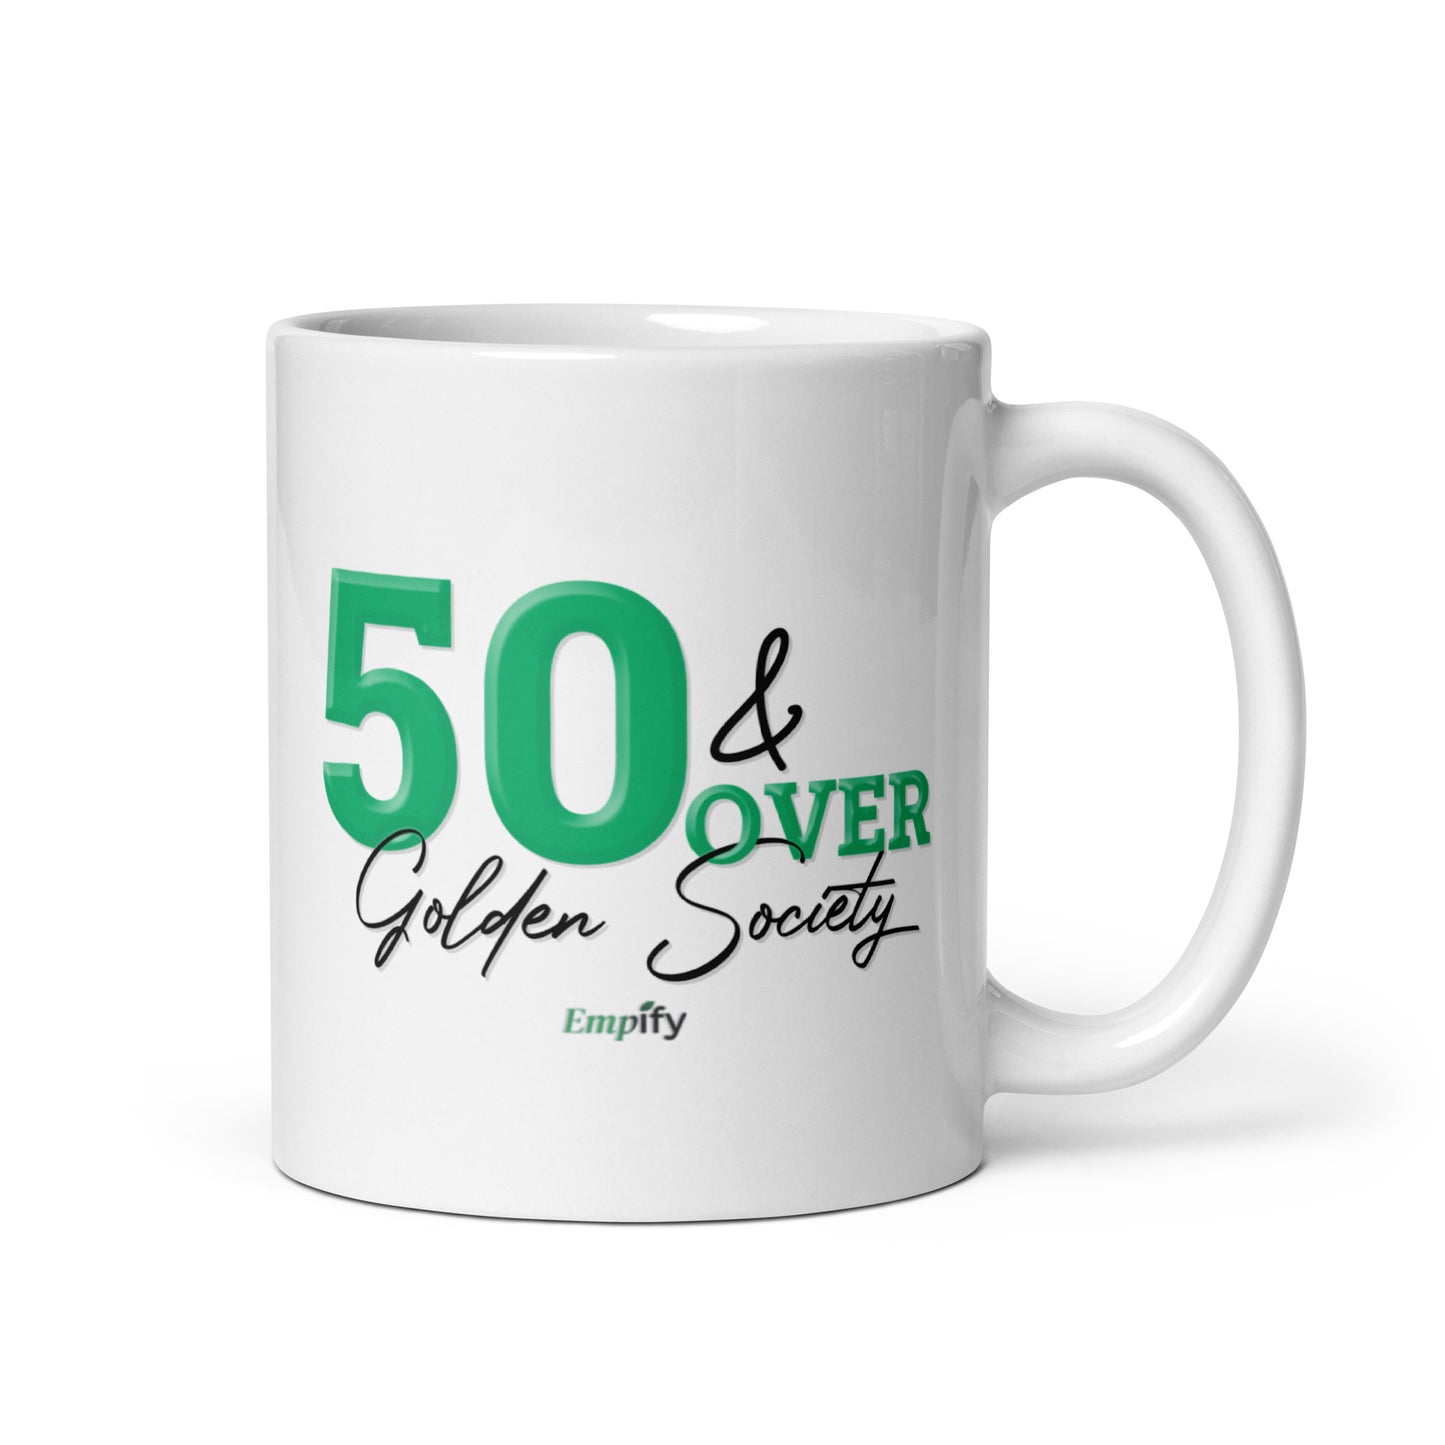 50 & Over Golden Society Mug